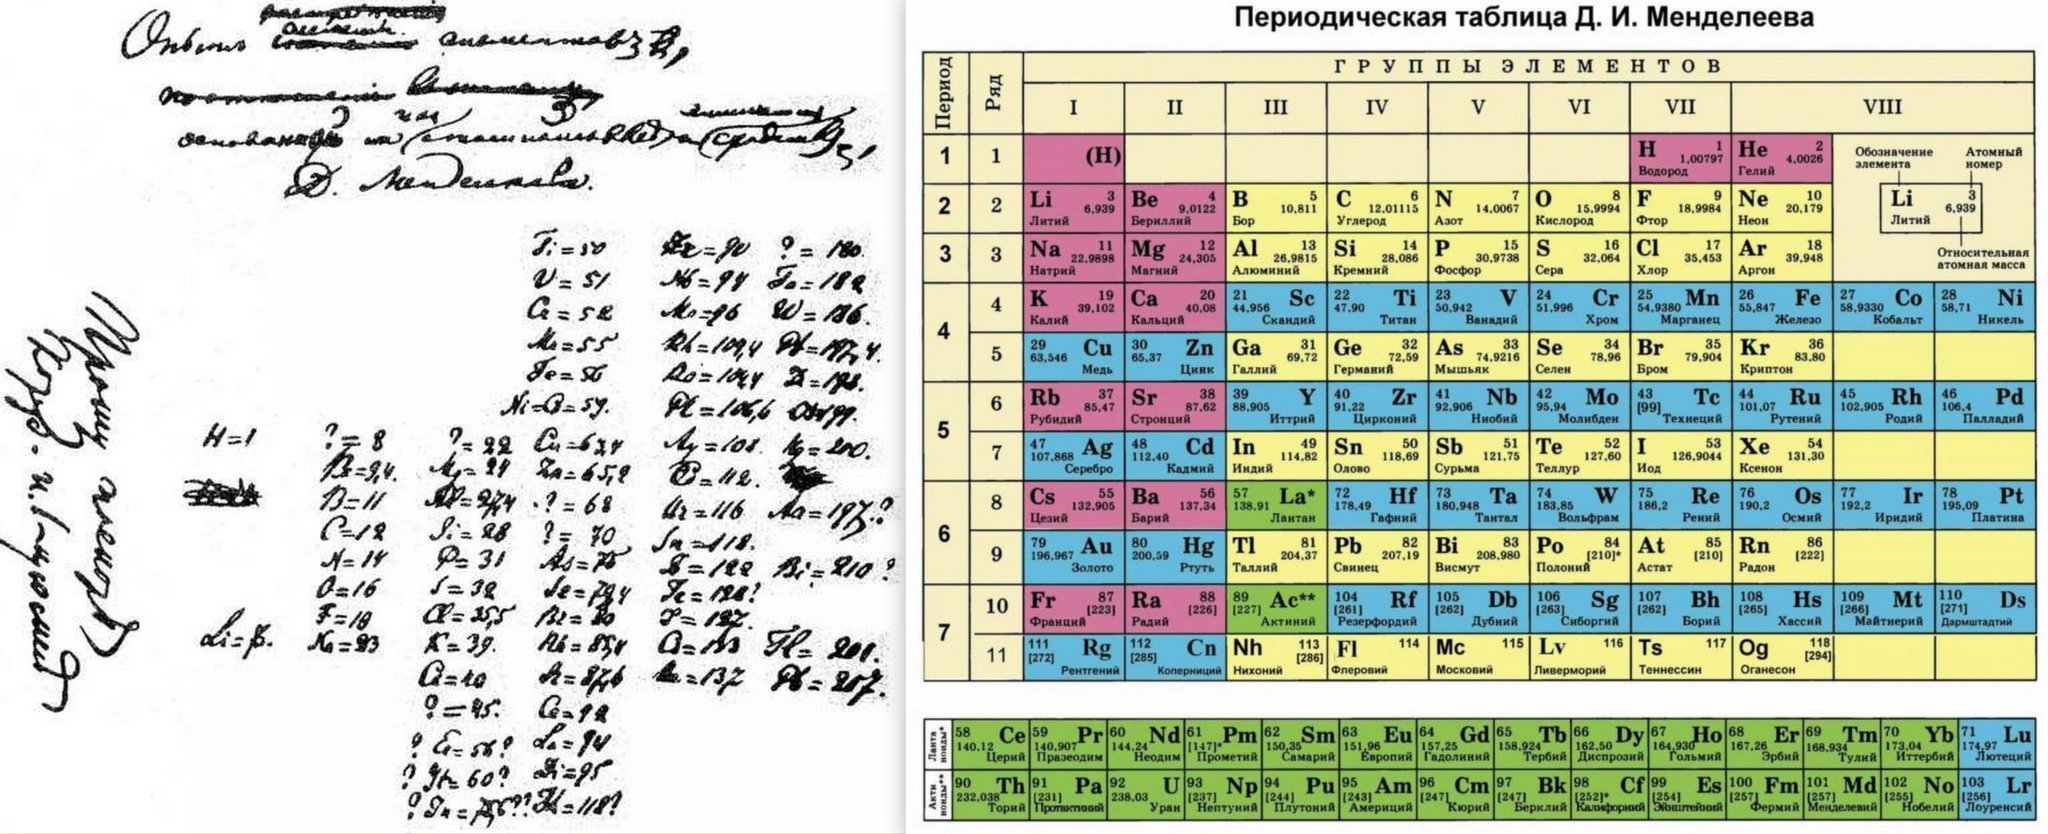 1 элемент псхэ. Периодическая система Менделеева 1869. Периодическая таблица Менделеева 1869. Первая таблица Менделеева 1869. Периодическая таблица Менделеева первоначальный вид.